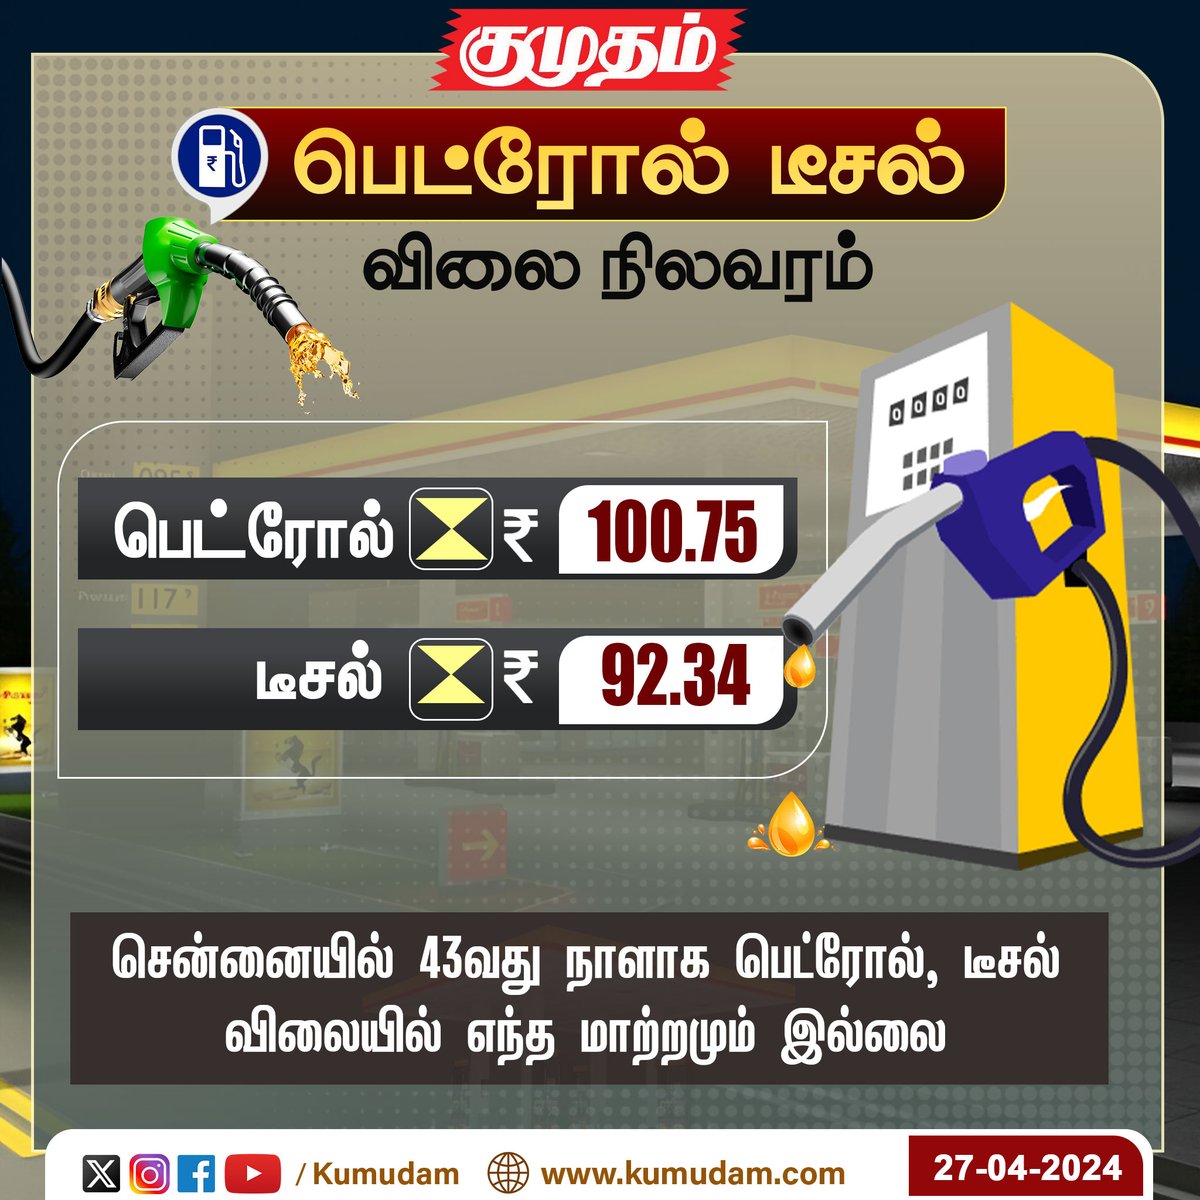 சென்னையில் 43வது நாளாக பெட்ரோல், டீசல் விலையில் எந்த மாற்றமும் இல்லை..!

#PetrolDieselPrice | #Chennai | #kumudam | #fuelprice | #economy | #businessnews | #petrolprice | #petrol | #TodayNews | #NewsUpdate |